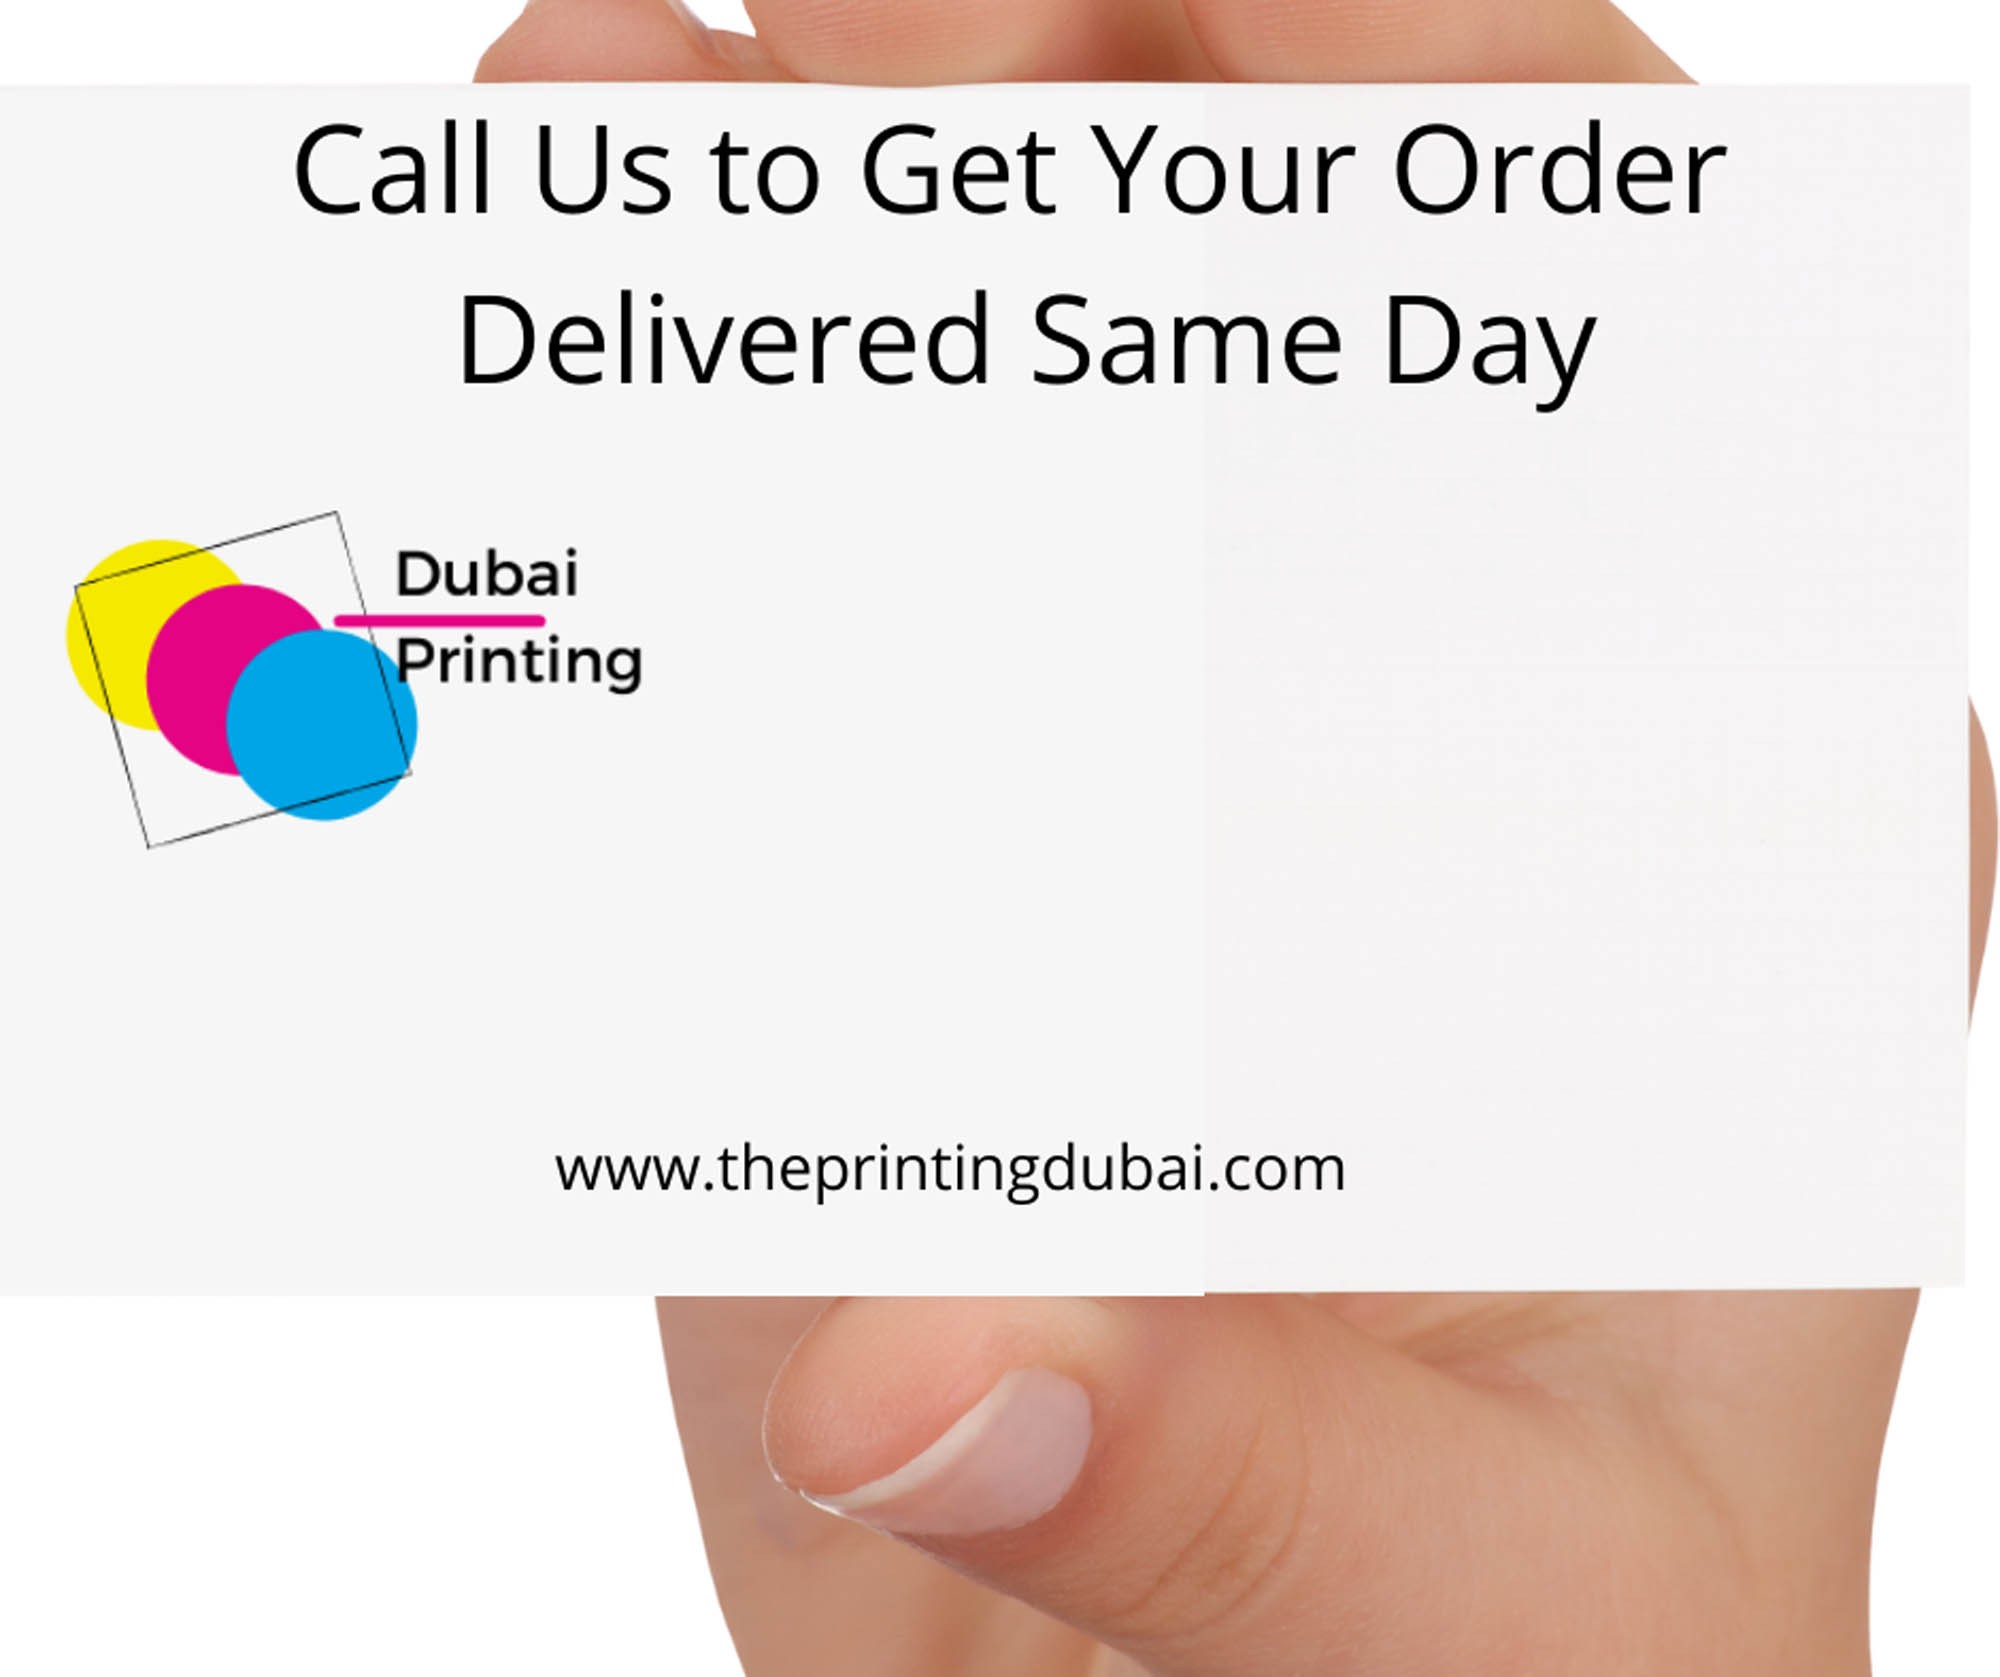 Business Card Printing Dubai